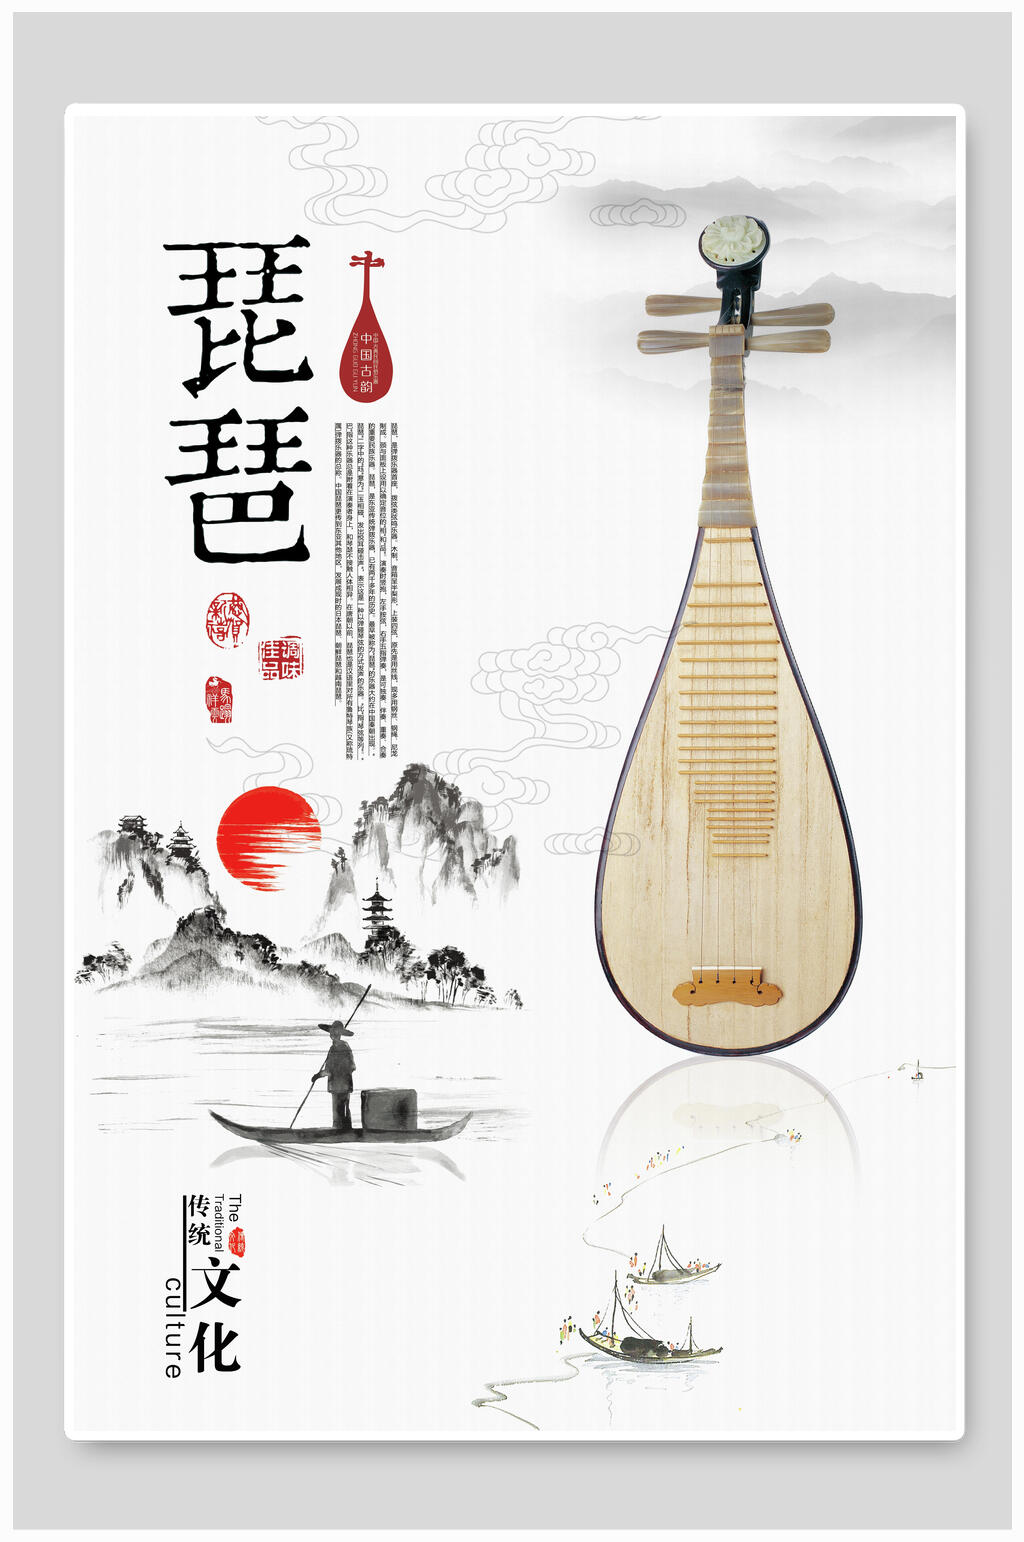 中国风古典琵琶乐器海报素材